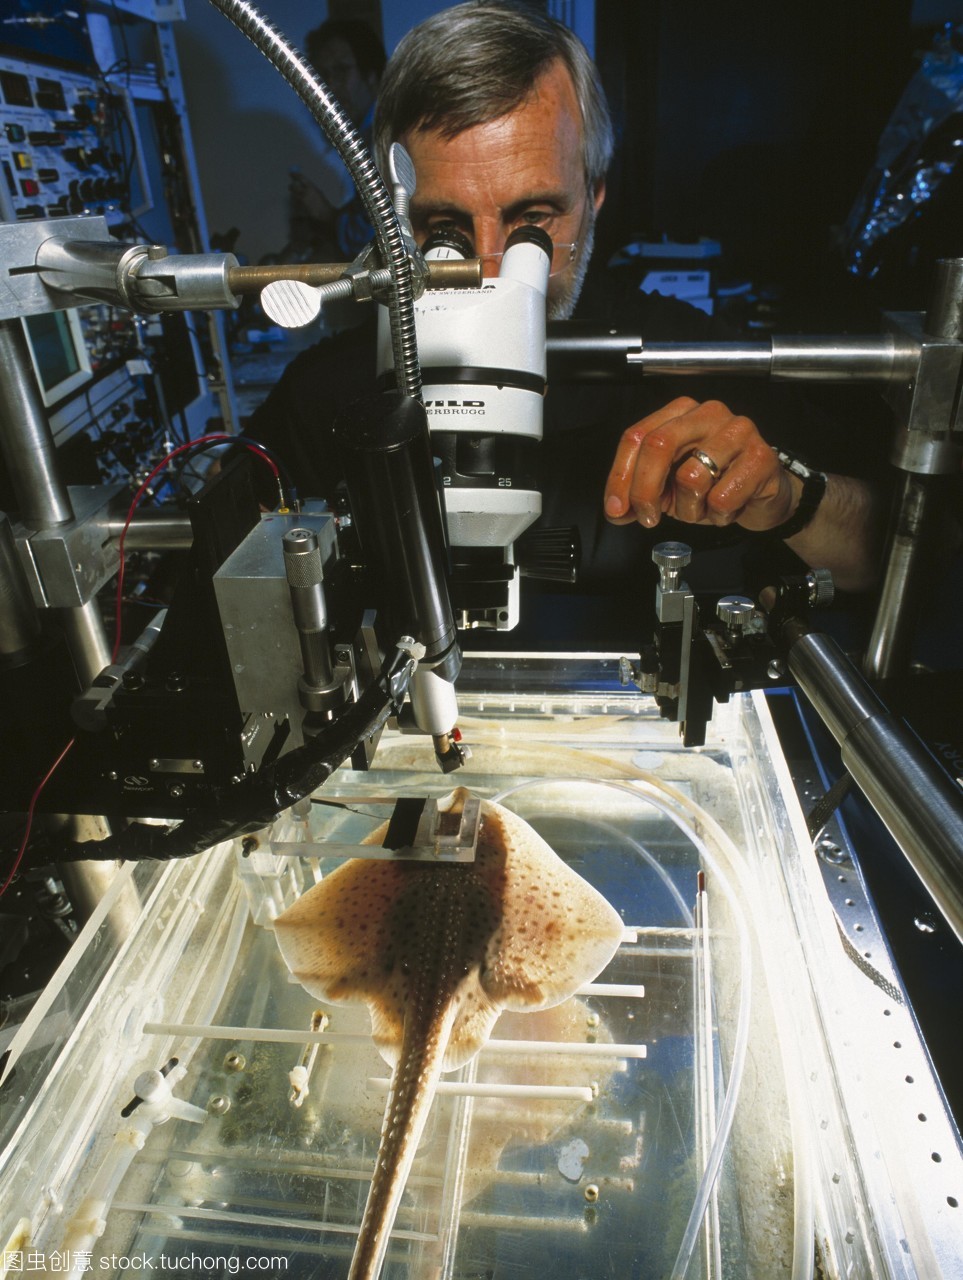 滑板的研究。在美国马萨诸塞州的伍兹霍尔海洋生物实验室mbl的显微镜下,生物学家研究了鳐鱼的眼睛rajaerinacea。这个冰鞋的眼睛与其他脊椎动物不同,它的视网膜眼球背面的感光膜只含有棒状细胞。这些是光敏感的细胞,可以探测低光水平。所有其他脊椎动物都有视网膜上的杆状细胞和颜色检测锥体细胞。孤立的研究棒提供了关于光/暗适应的信息,并可能导致治疗适应障碍的新方法,如夜盲症和色素性视网膜炎。